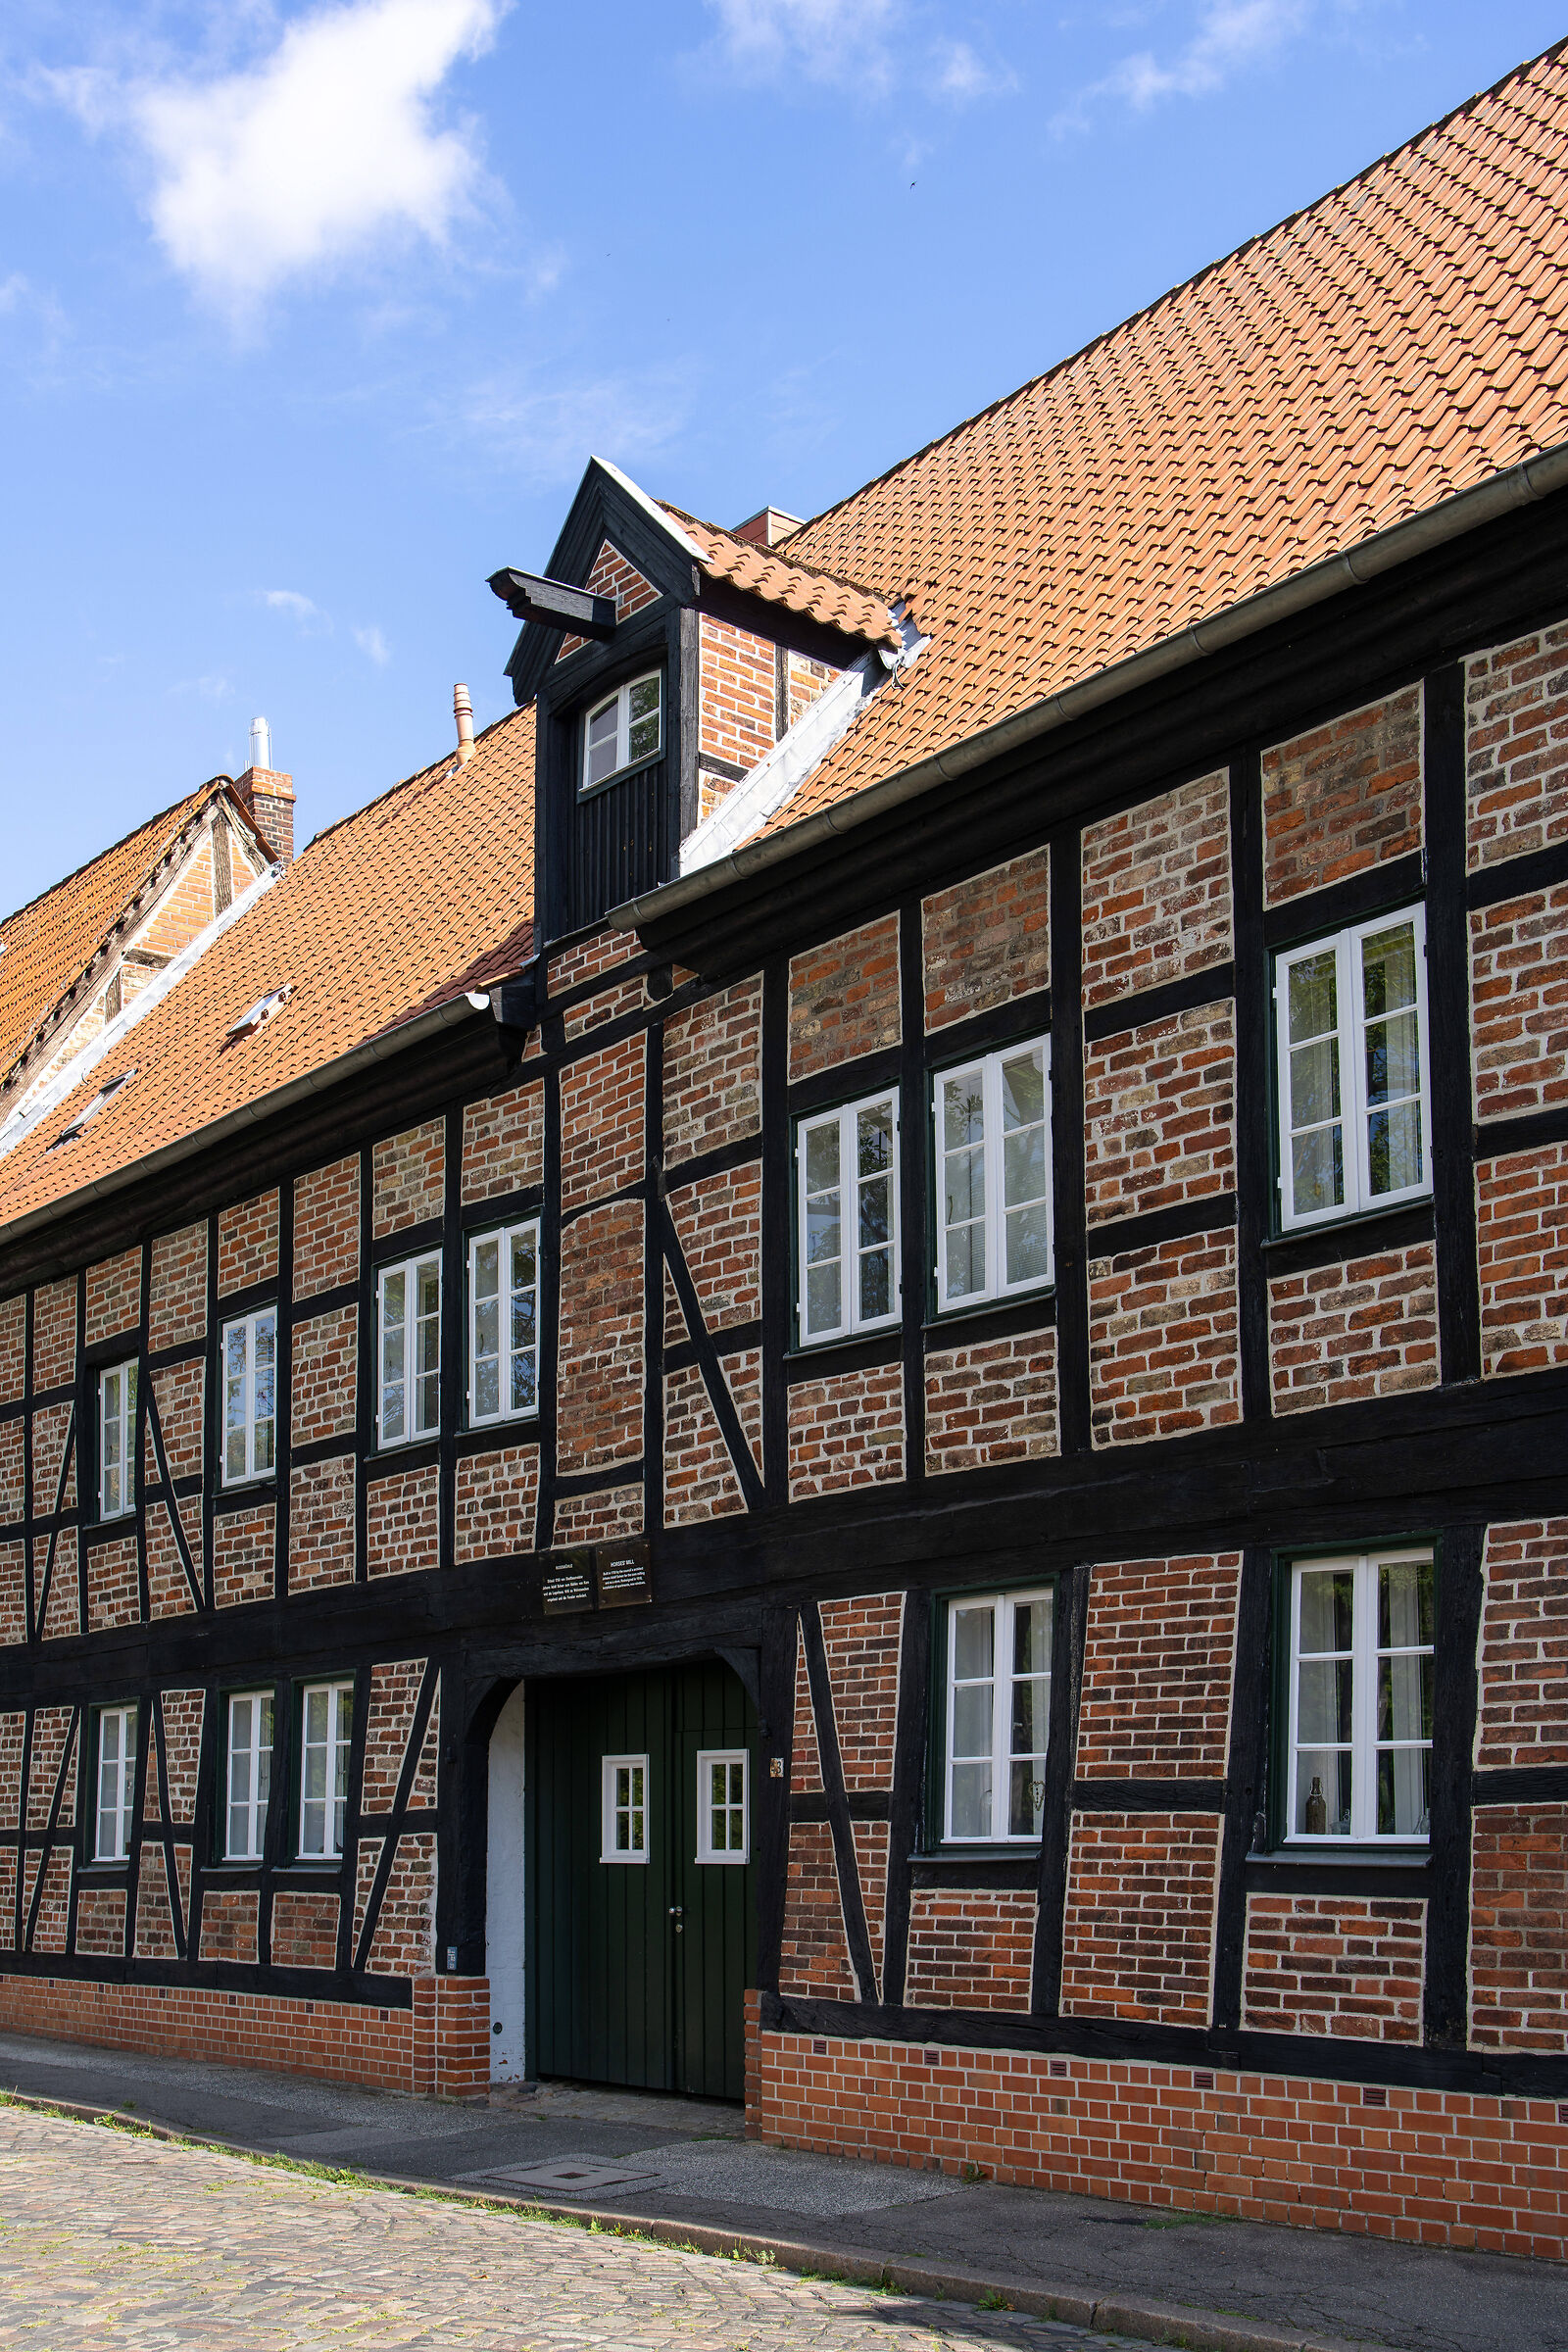 Lübeck...